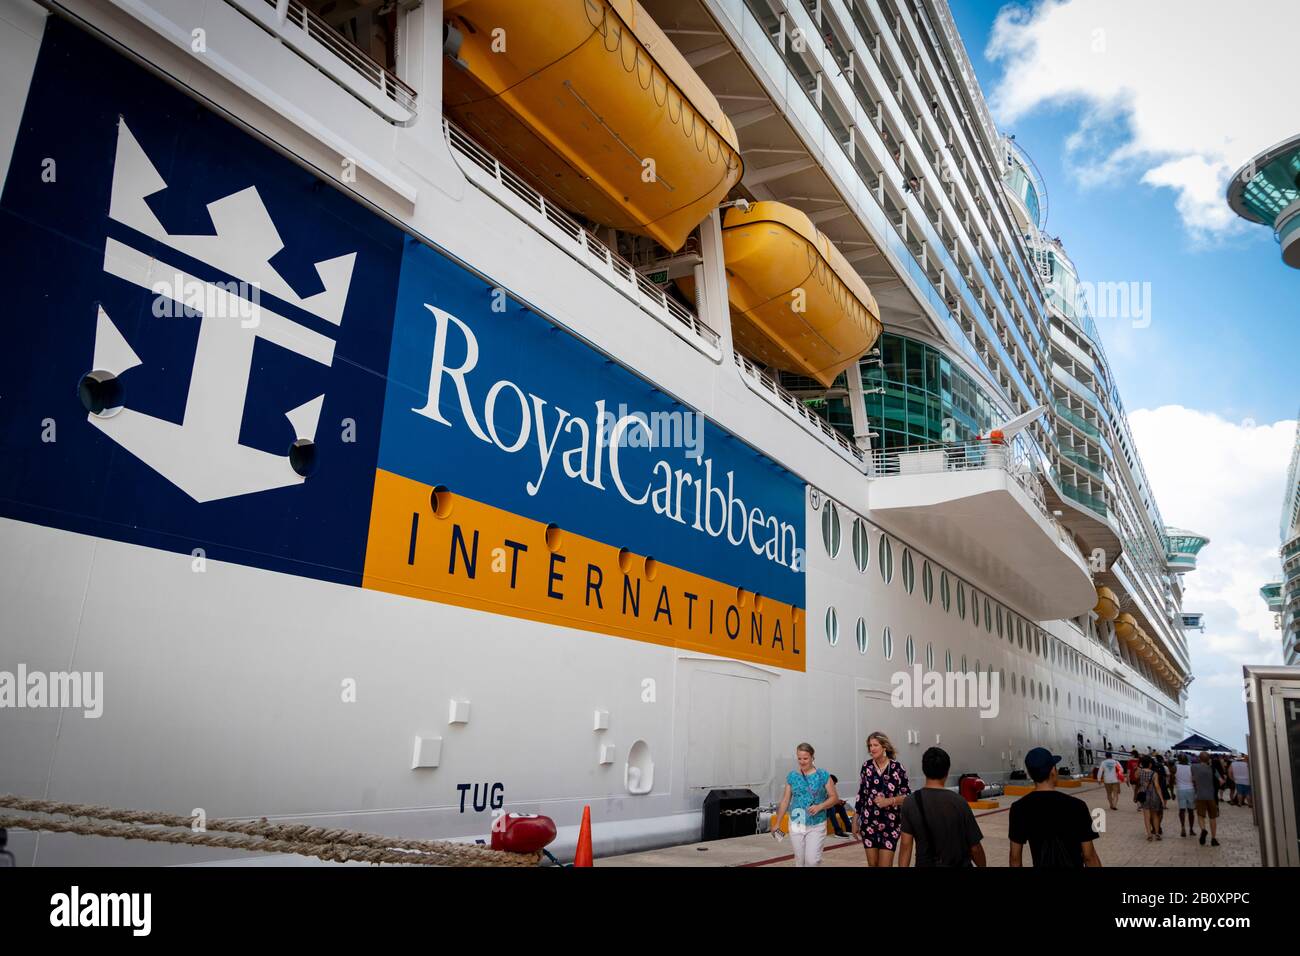 Turisti in vacanza a piedi da e per le loro navi da crociera al porto; logo 'Royal Caribbean International' nave da crociera visibile in lontananza Foto Stock